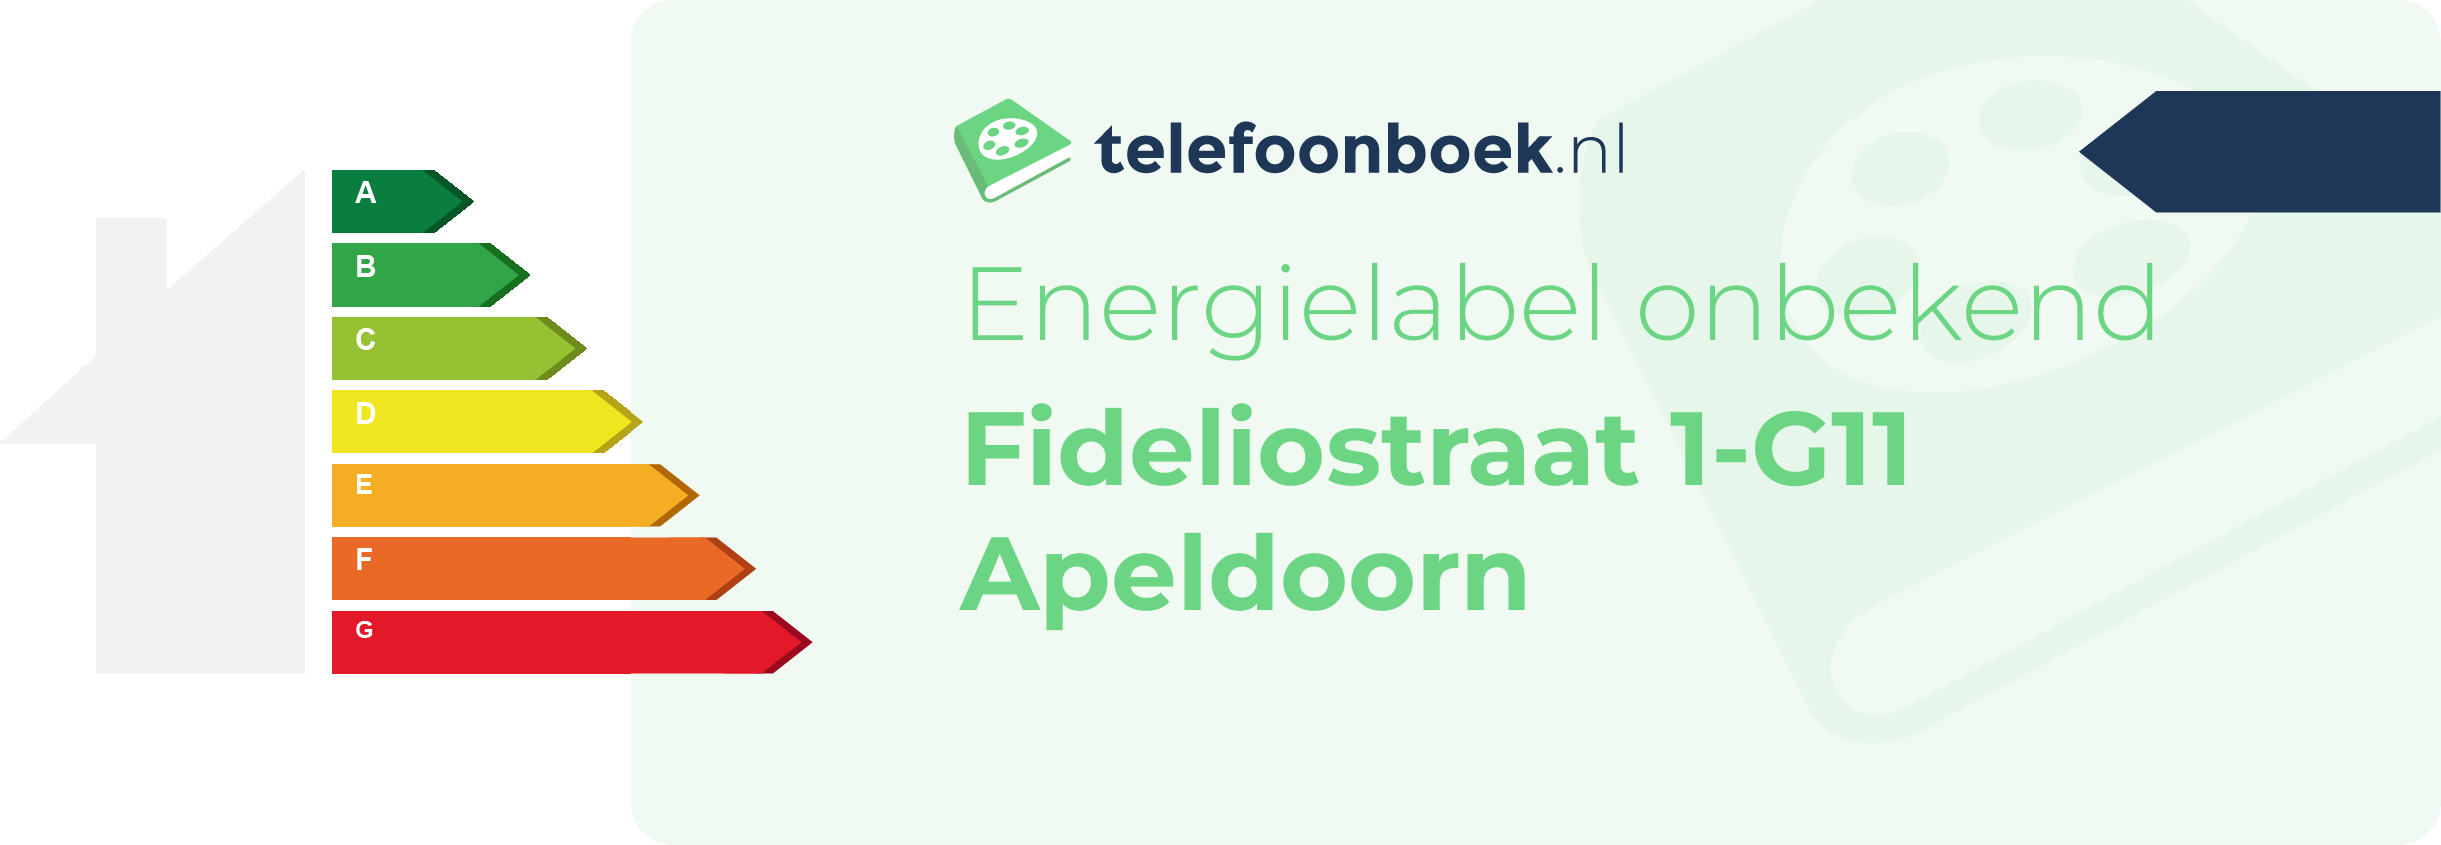 Energielabel Fideliostraat 1-G11 Apeldoorn